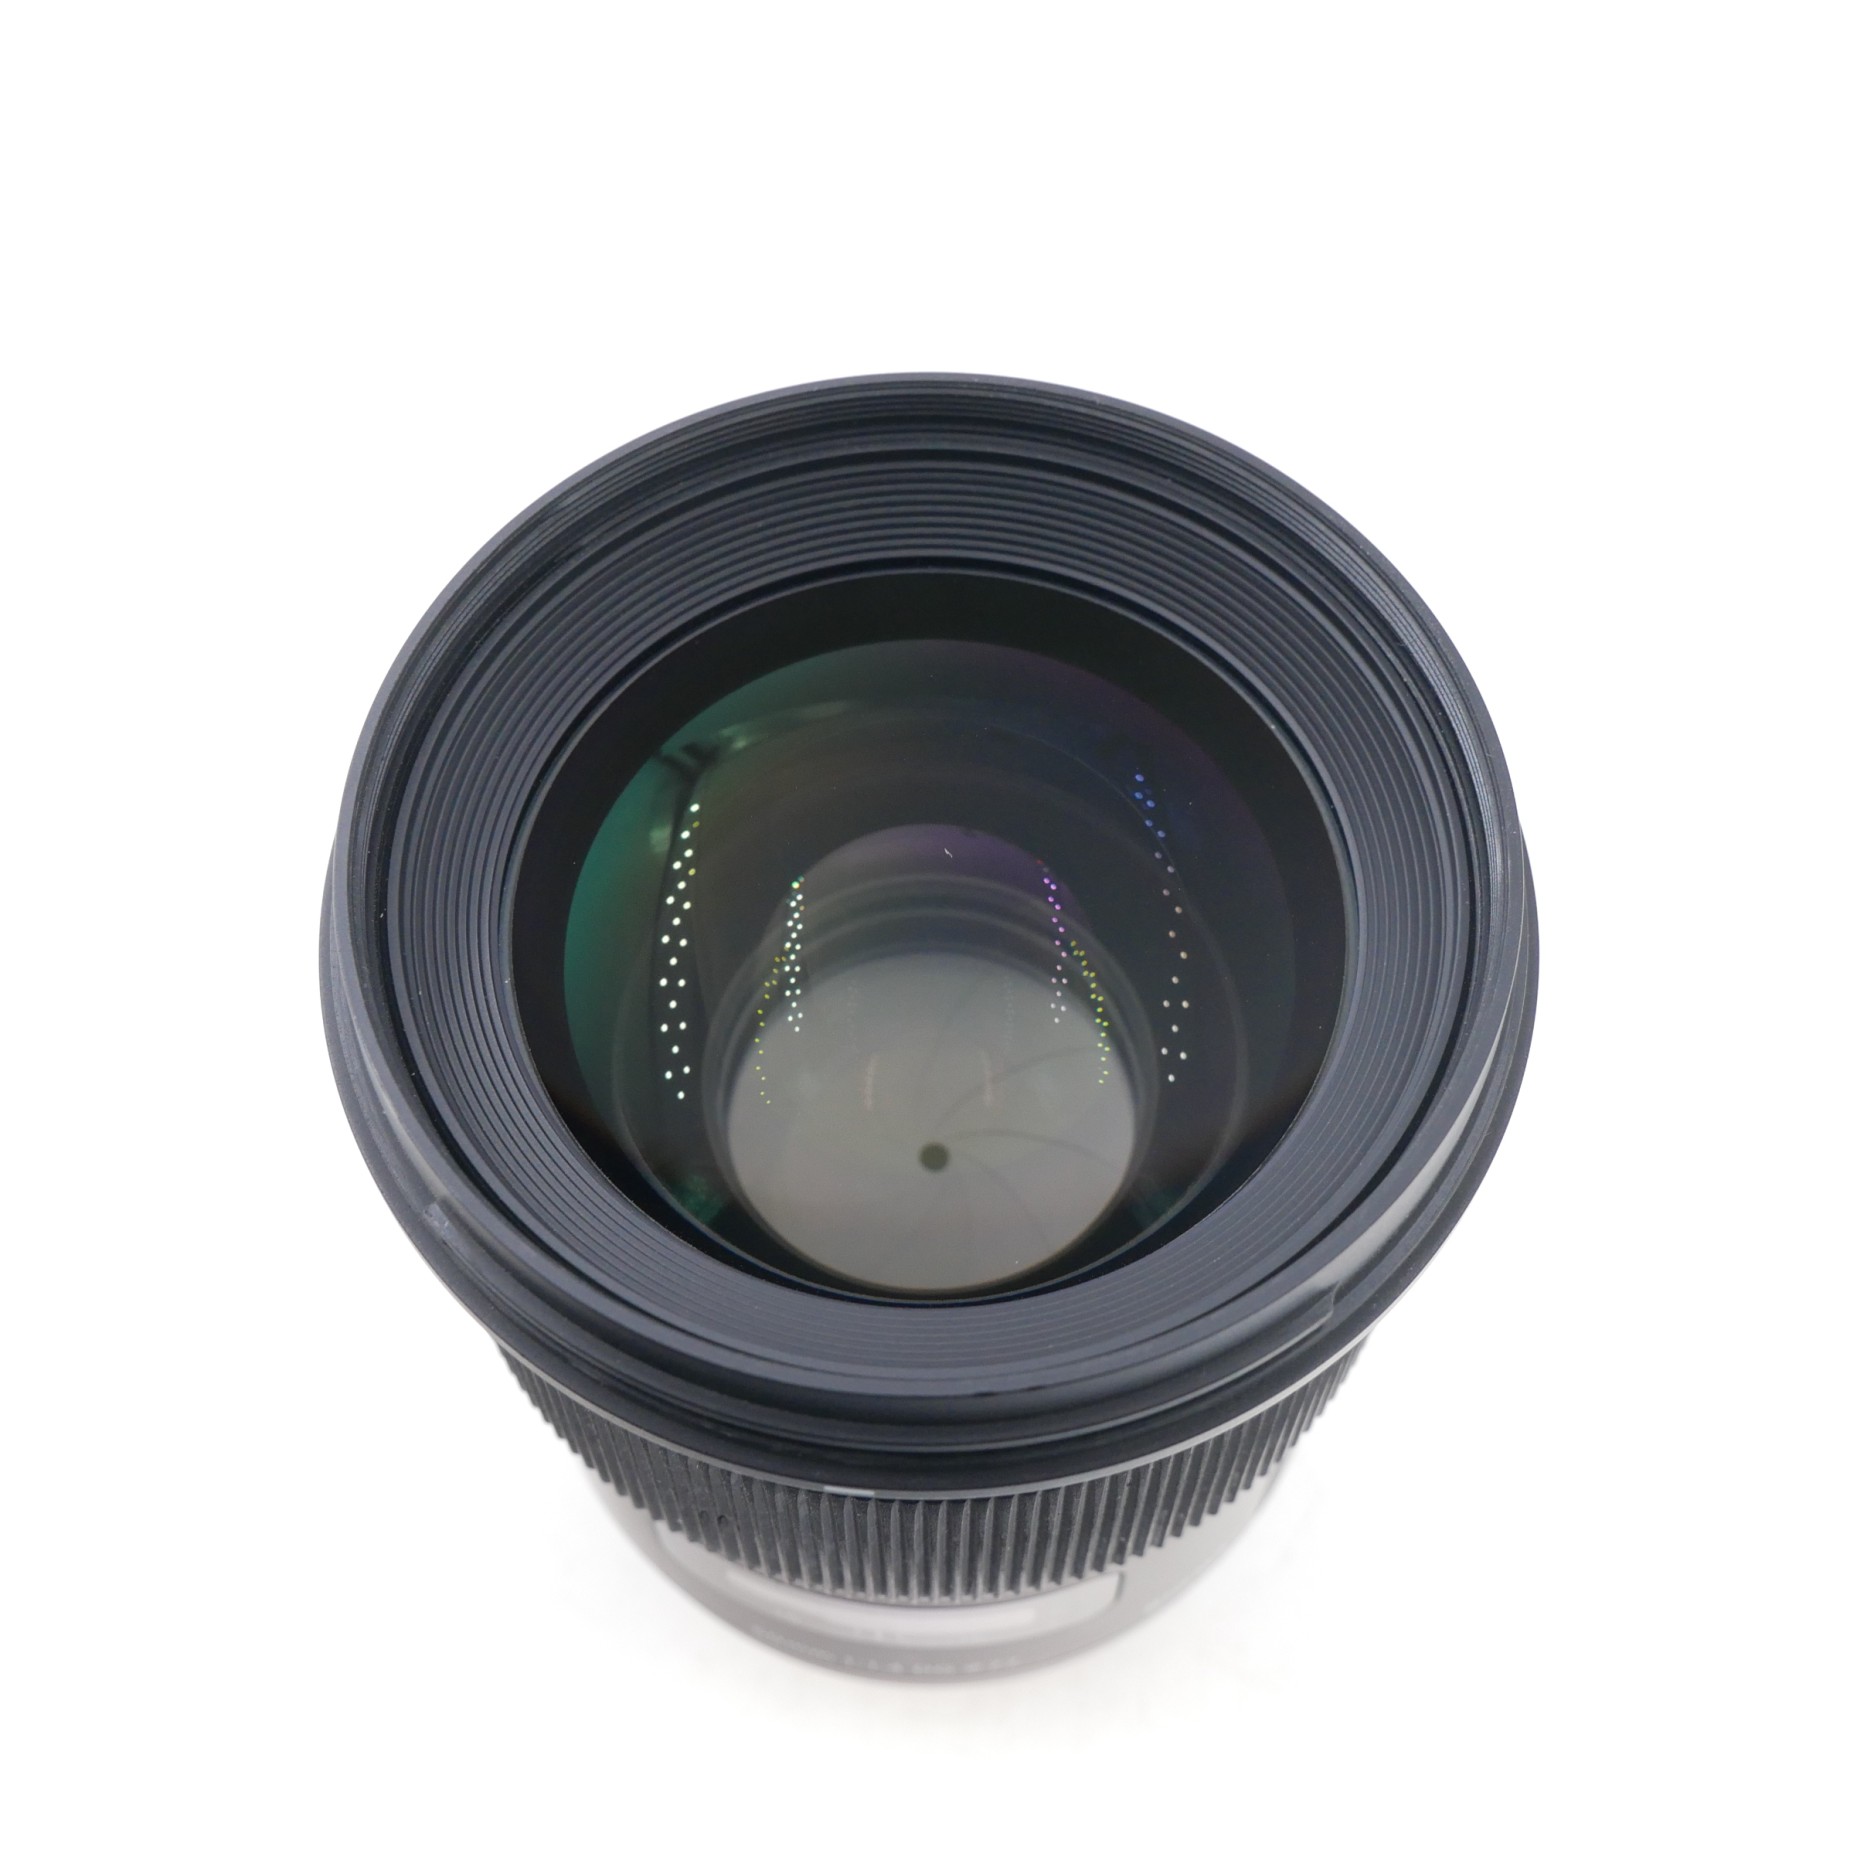 S-H-YXXFAX_2.jpg - Sigma AF 50mm F1.4 DG Art Lens in Nikon Mount